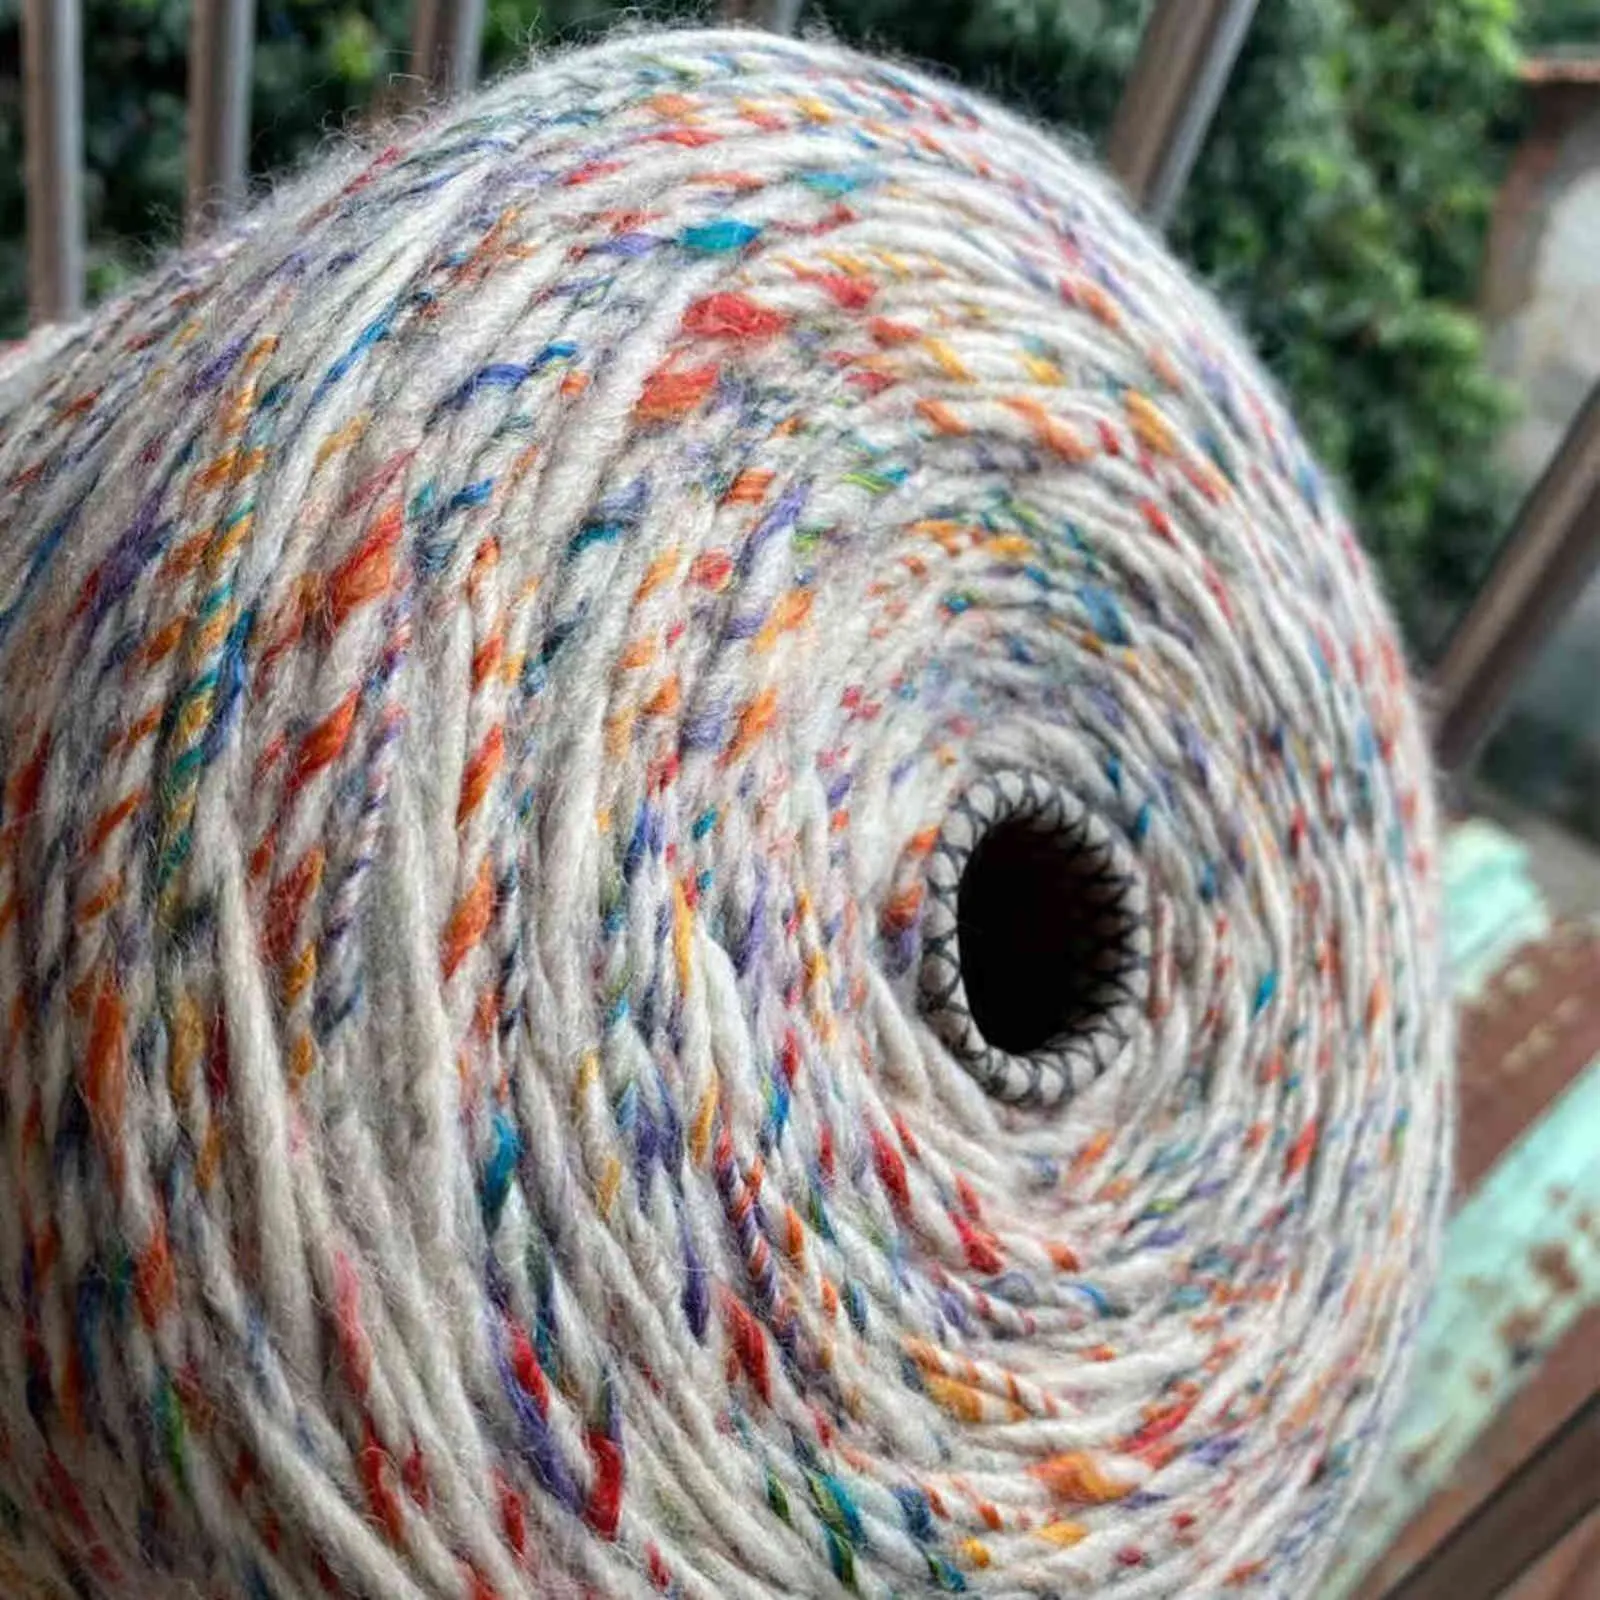 Limité Très Beau 500g Doux Santé Fantaisie Espace Dye Acrylique Laine Islande Fil pour Tricoter Couture Tissage Crochet Fil X5215 Y211129